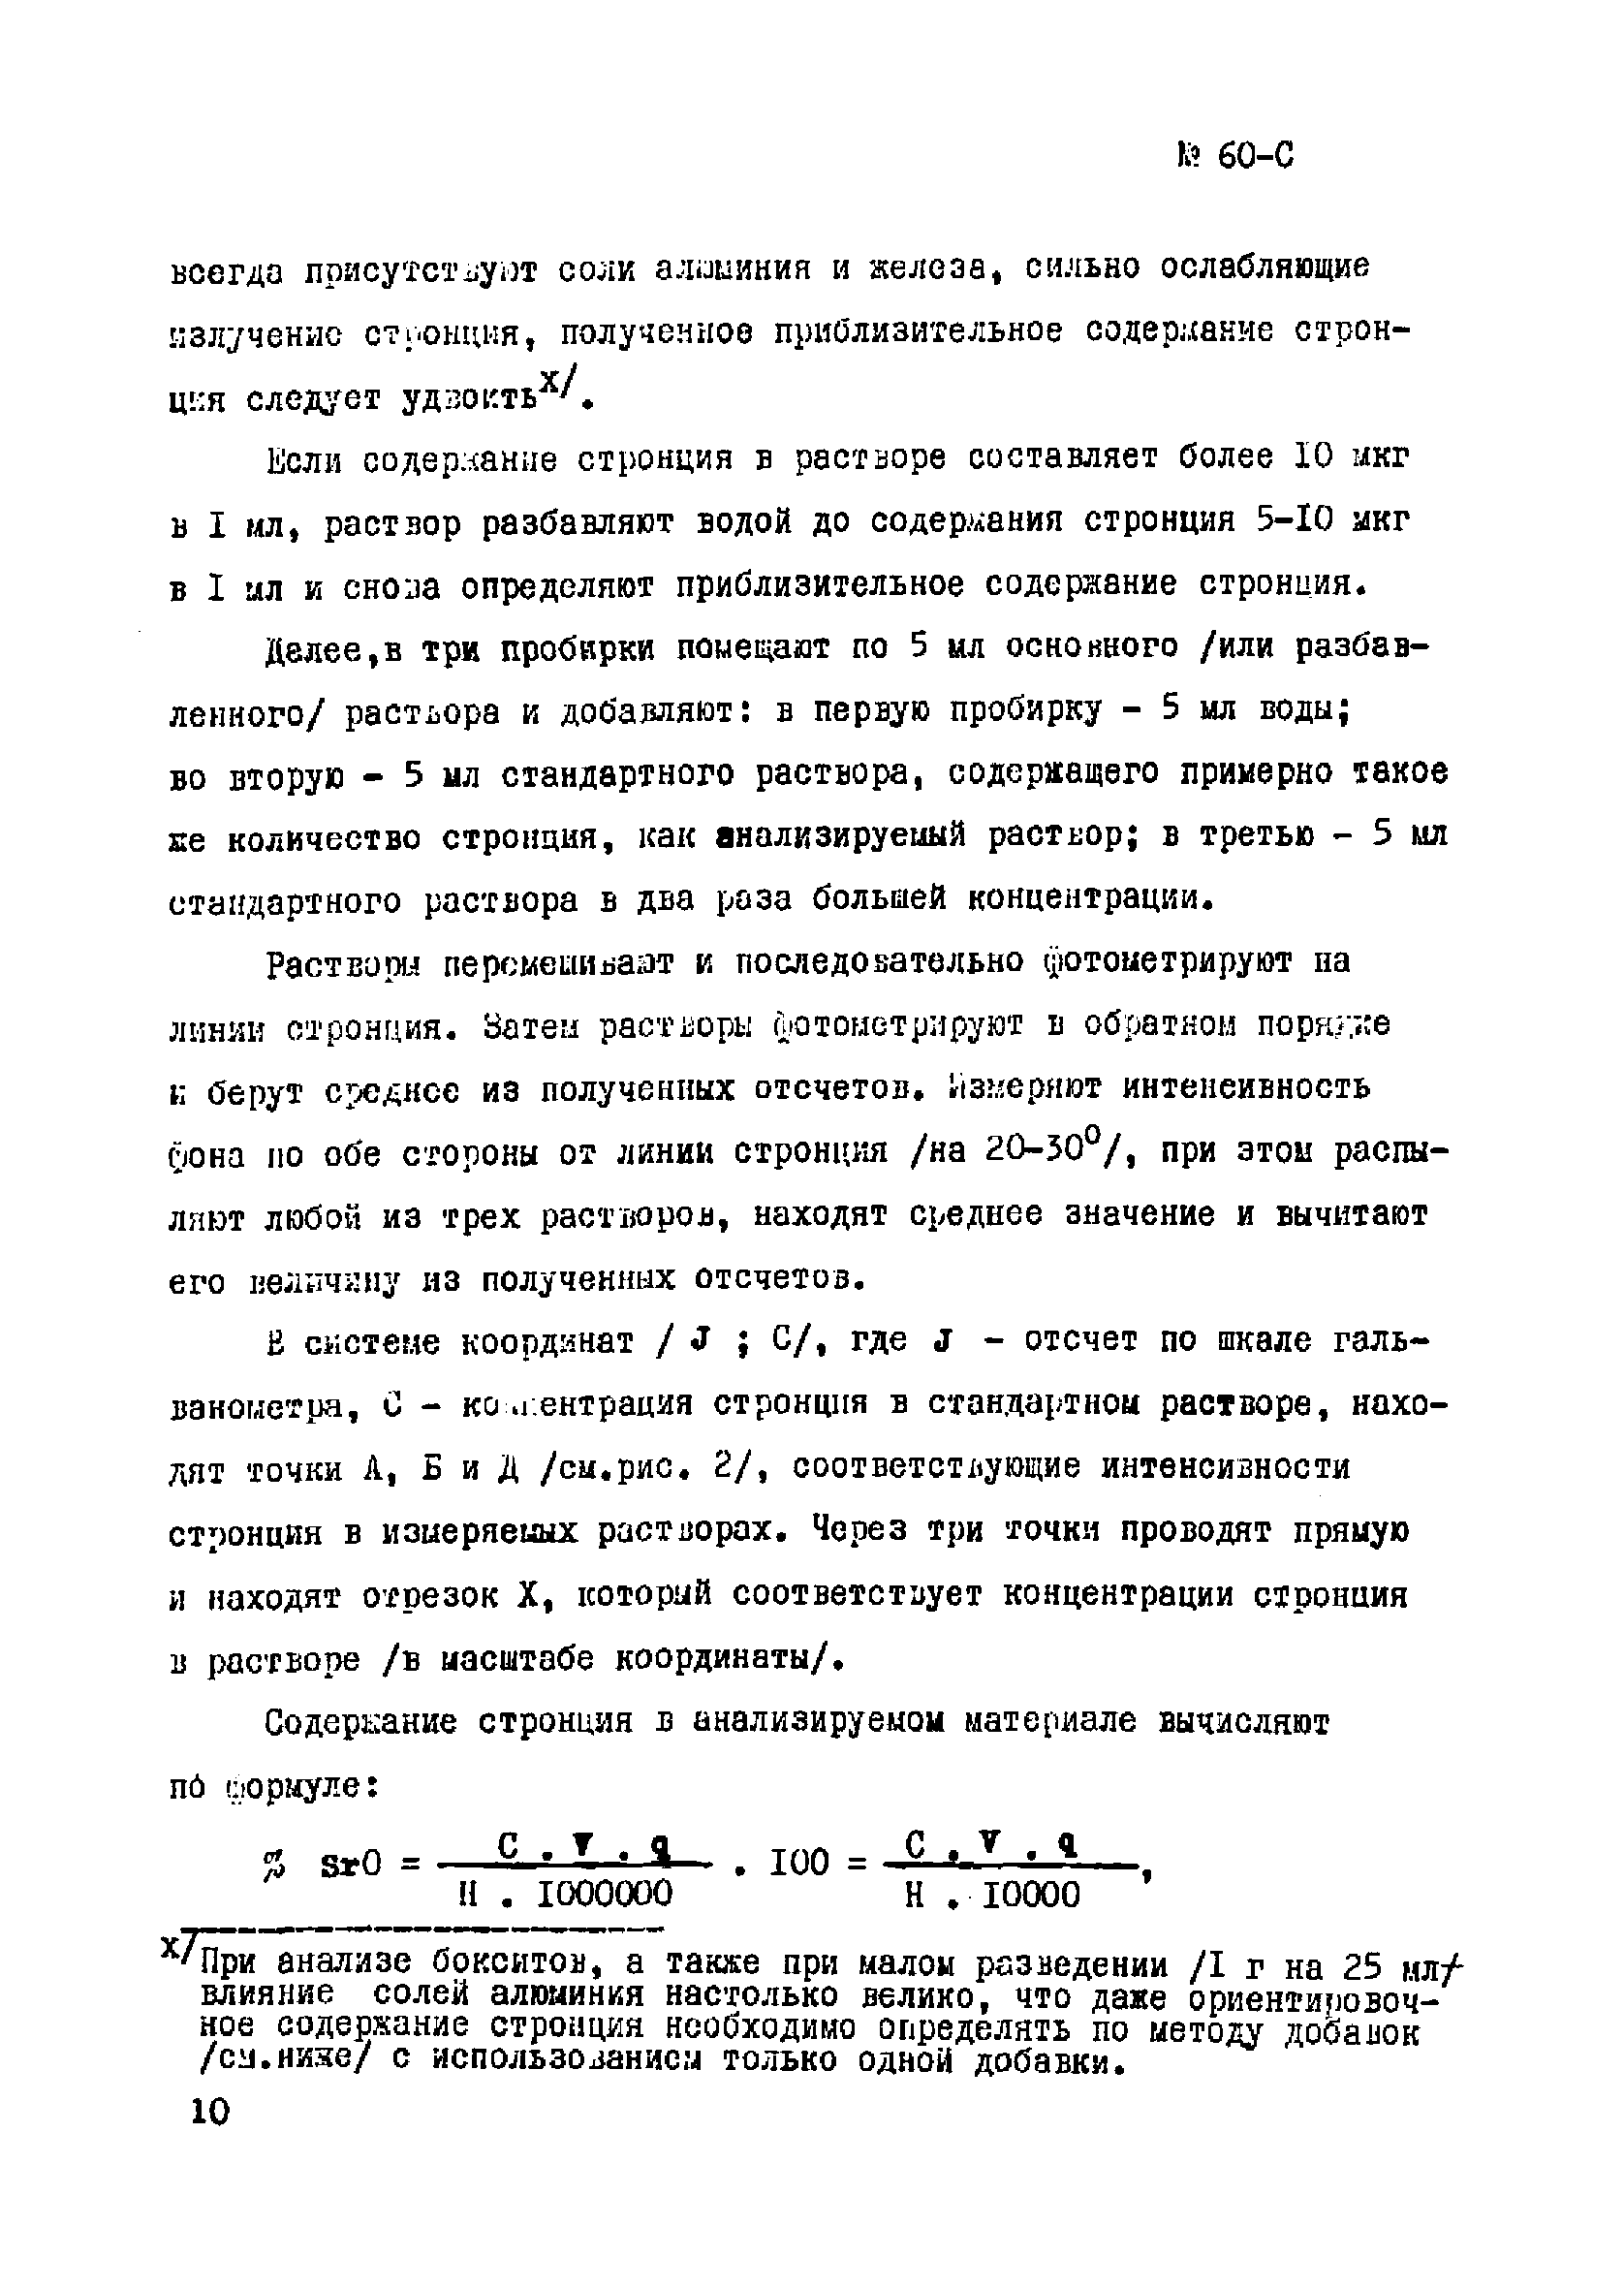 Инструкция НСАМ 60-С